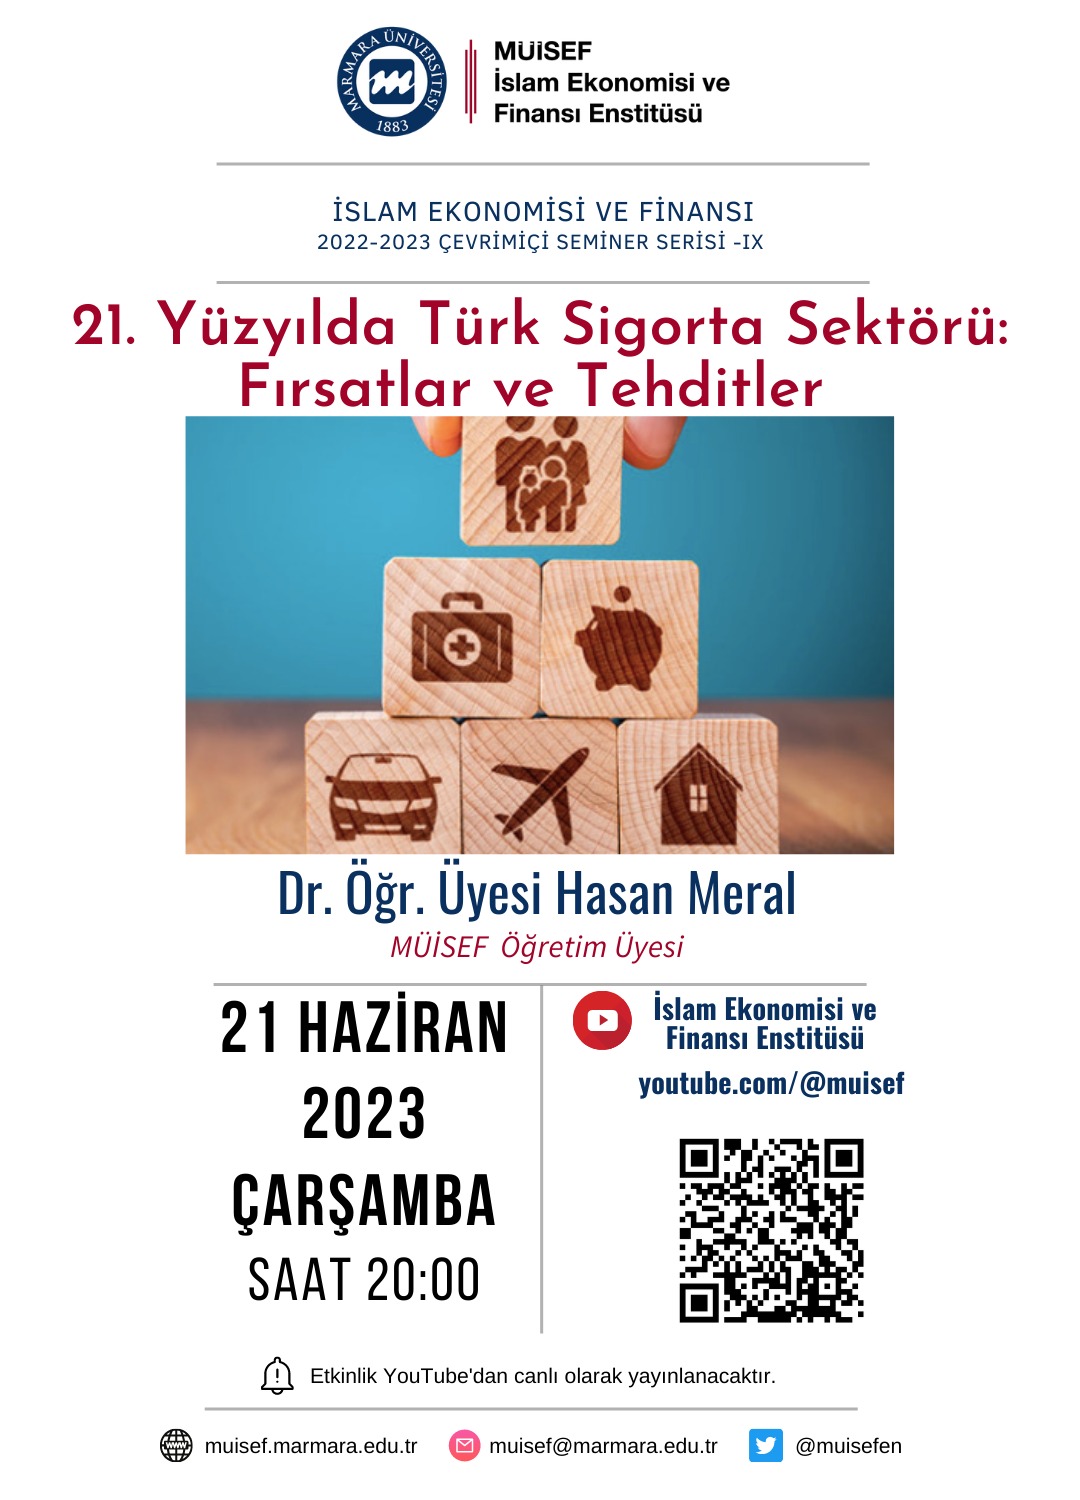 21-yuzyilda-turk-sigorta-sektoru-webinar.jpeg (236 KB)